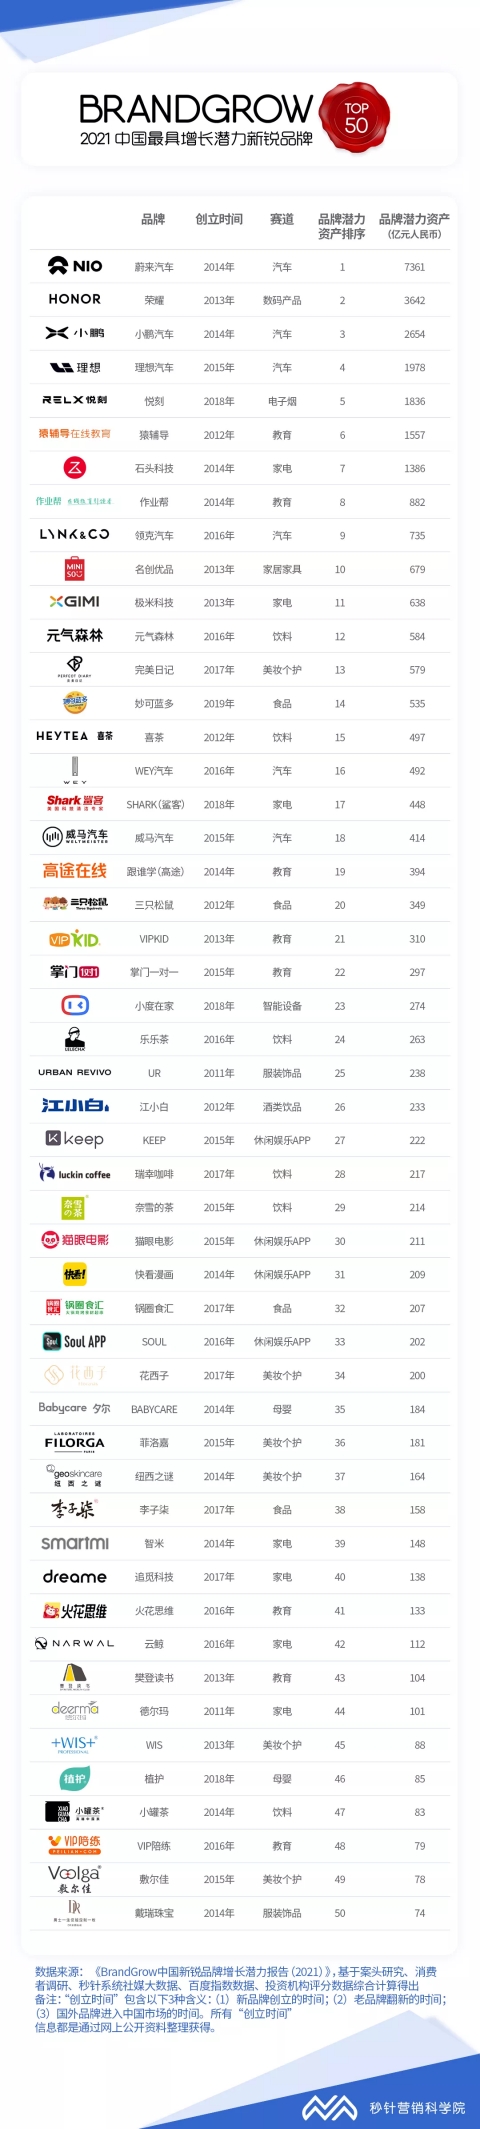 云鲸智能入选“中国最具增长潜力新锐品牌TOP50”